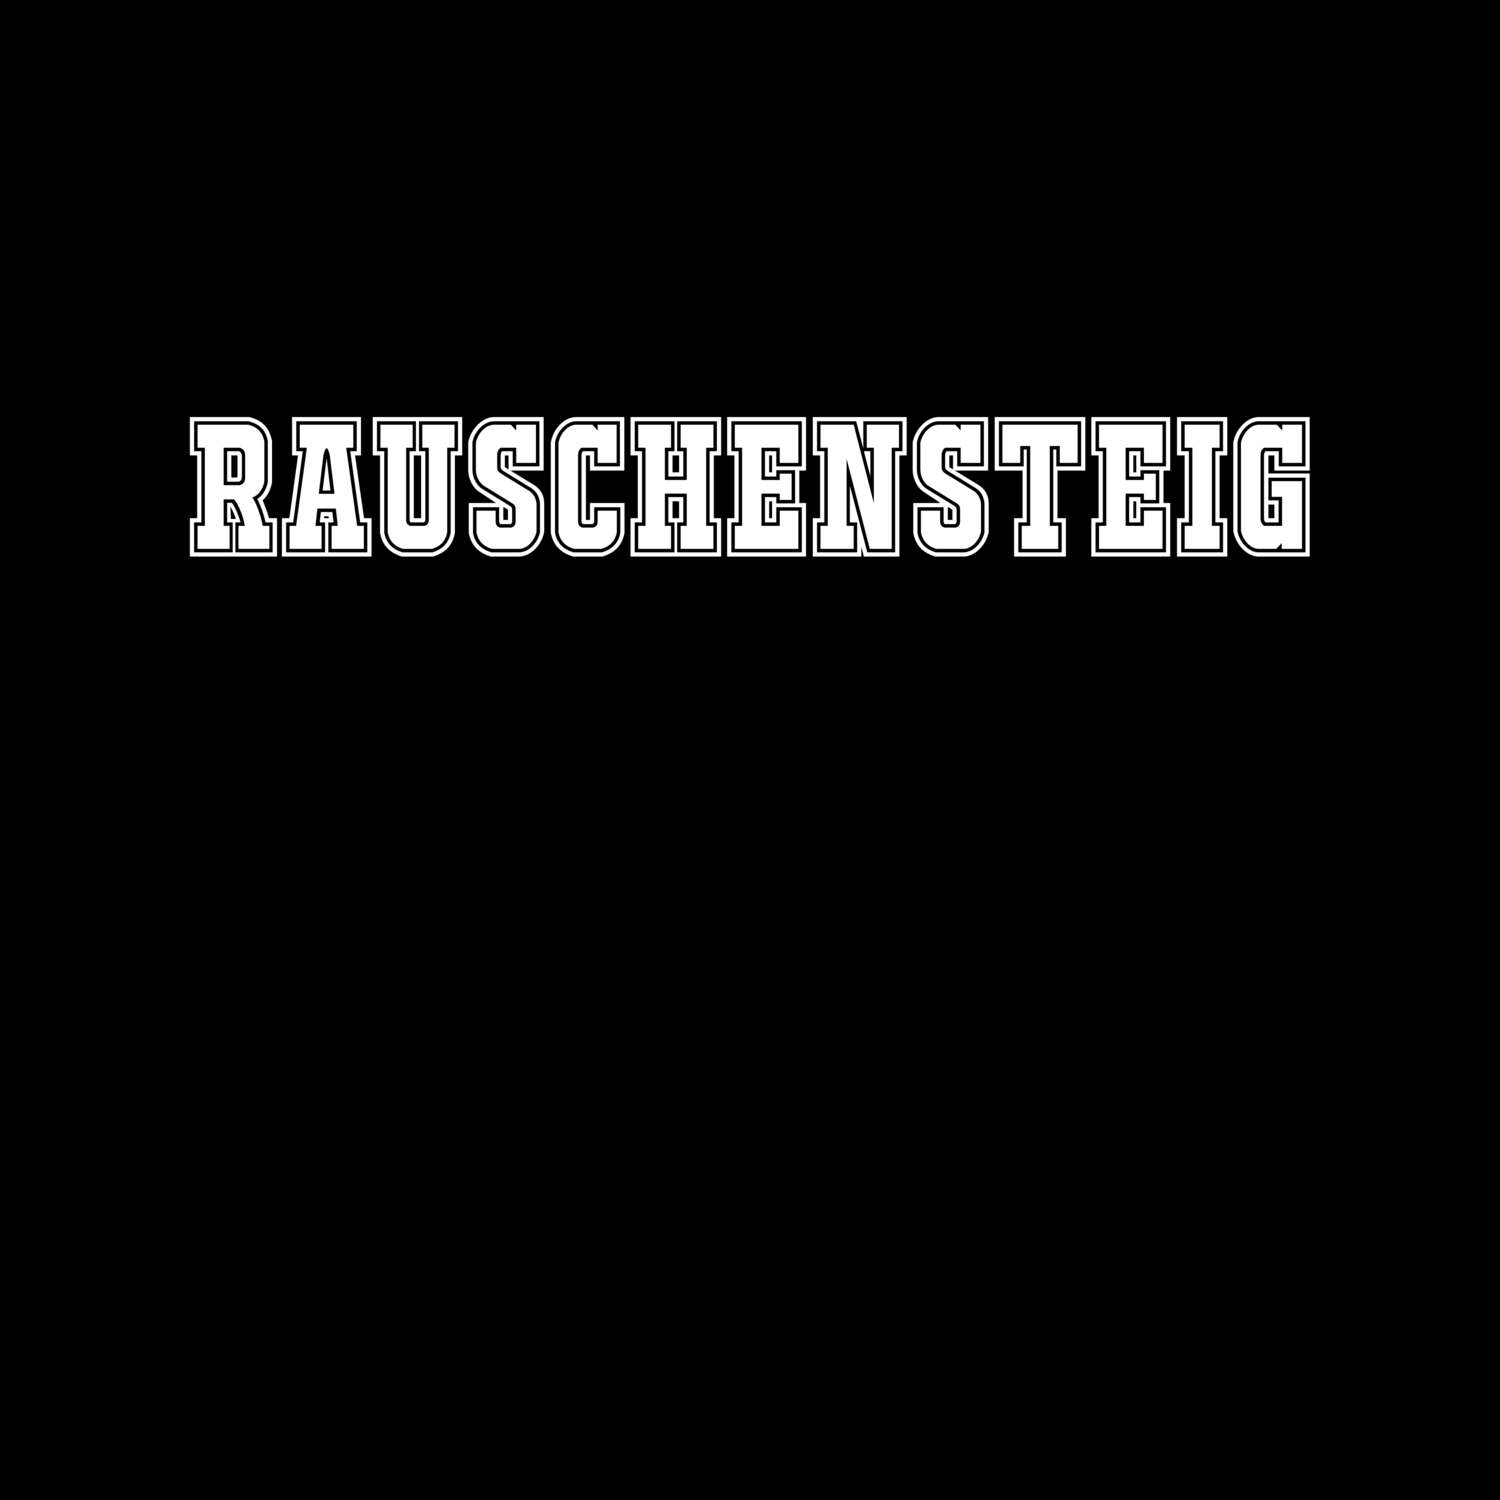 Rauschensteig T-Shirt »Classic«